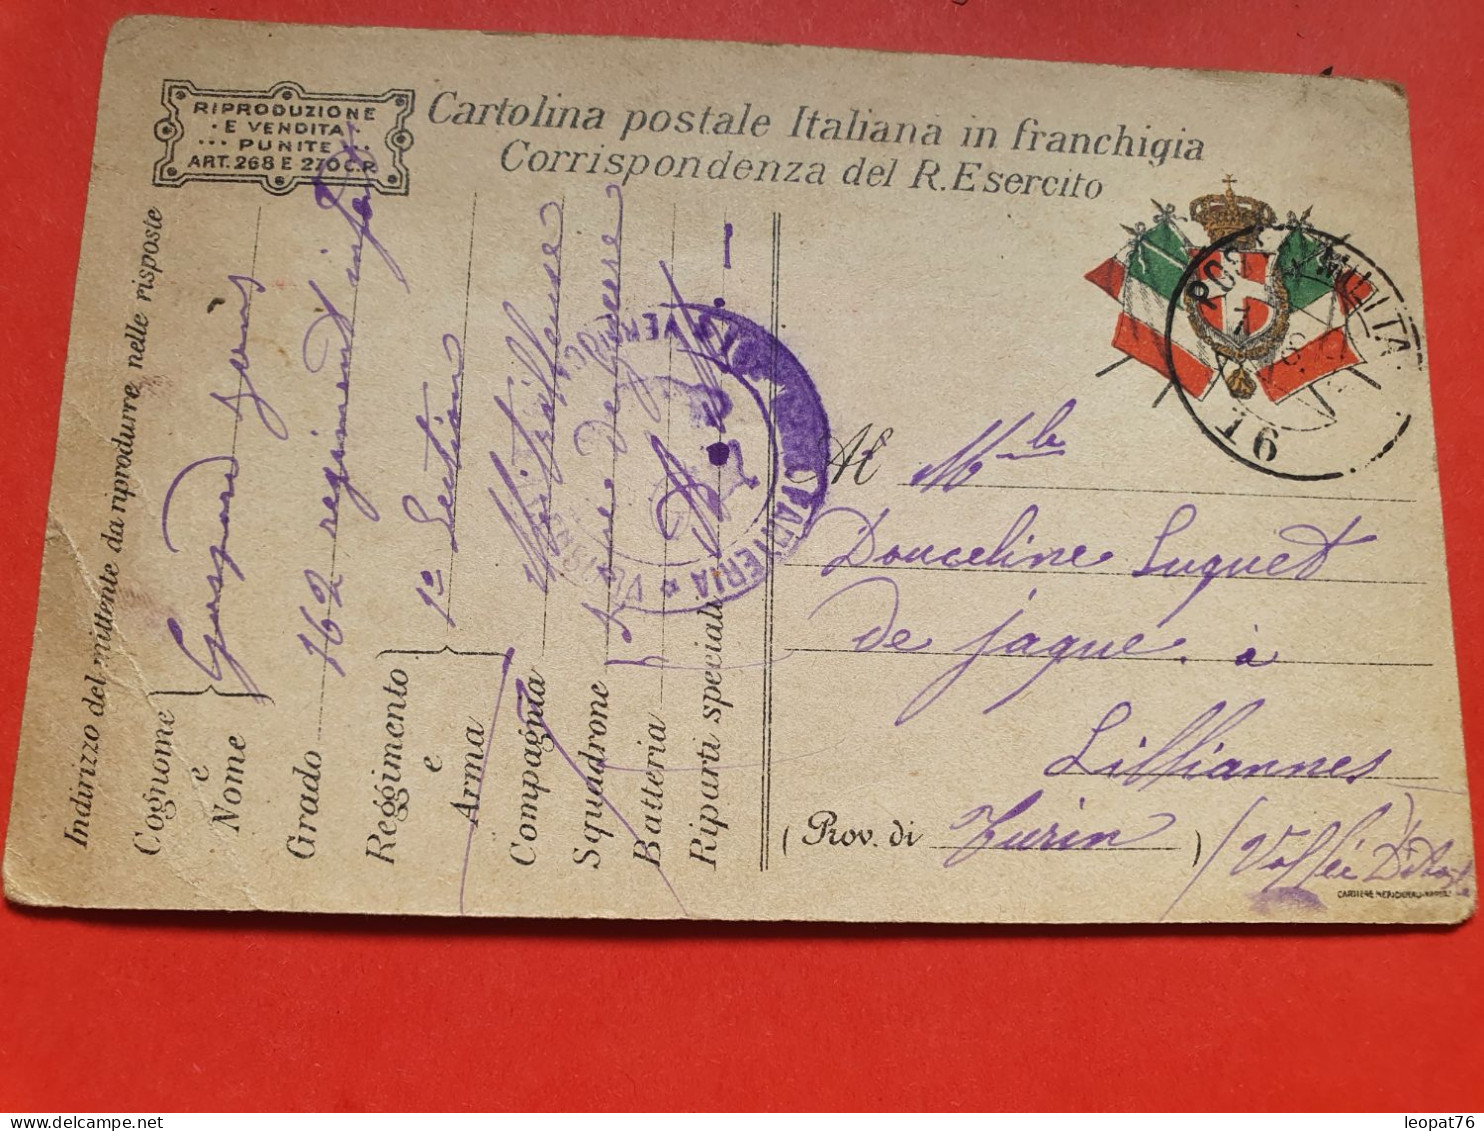 Italie - Carte FM Voyagé En 1917 - Réf 1662 - Militaire Post (PM)